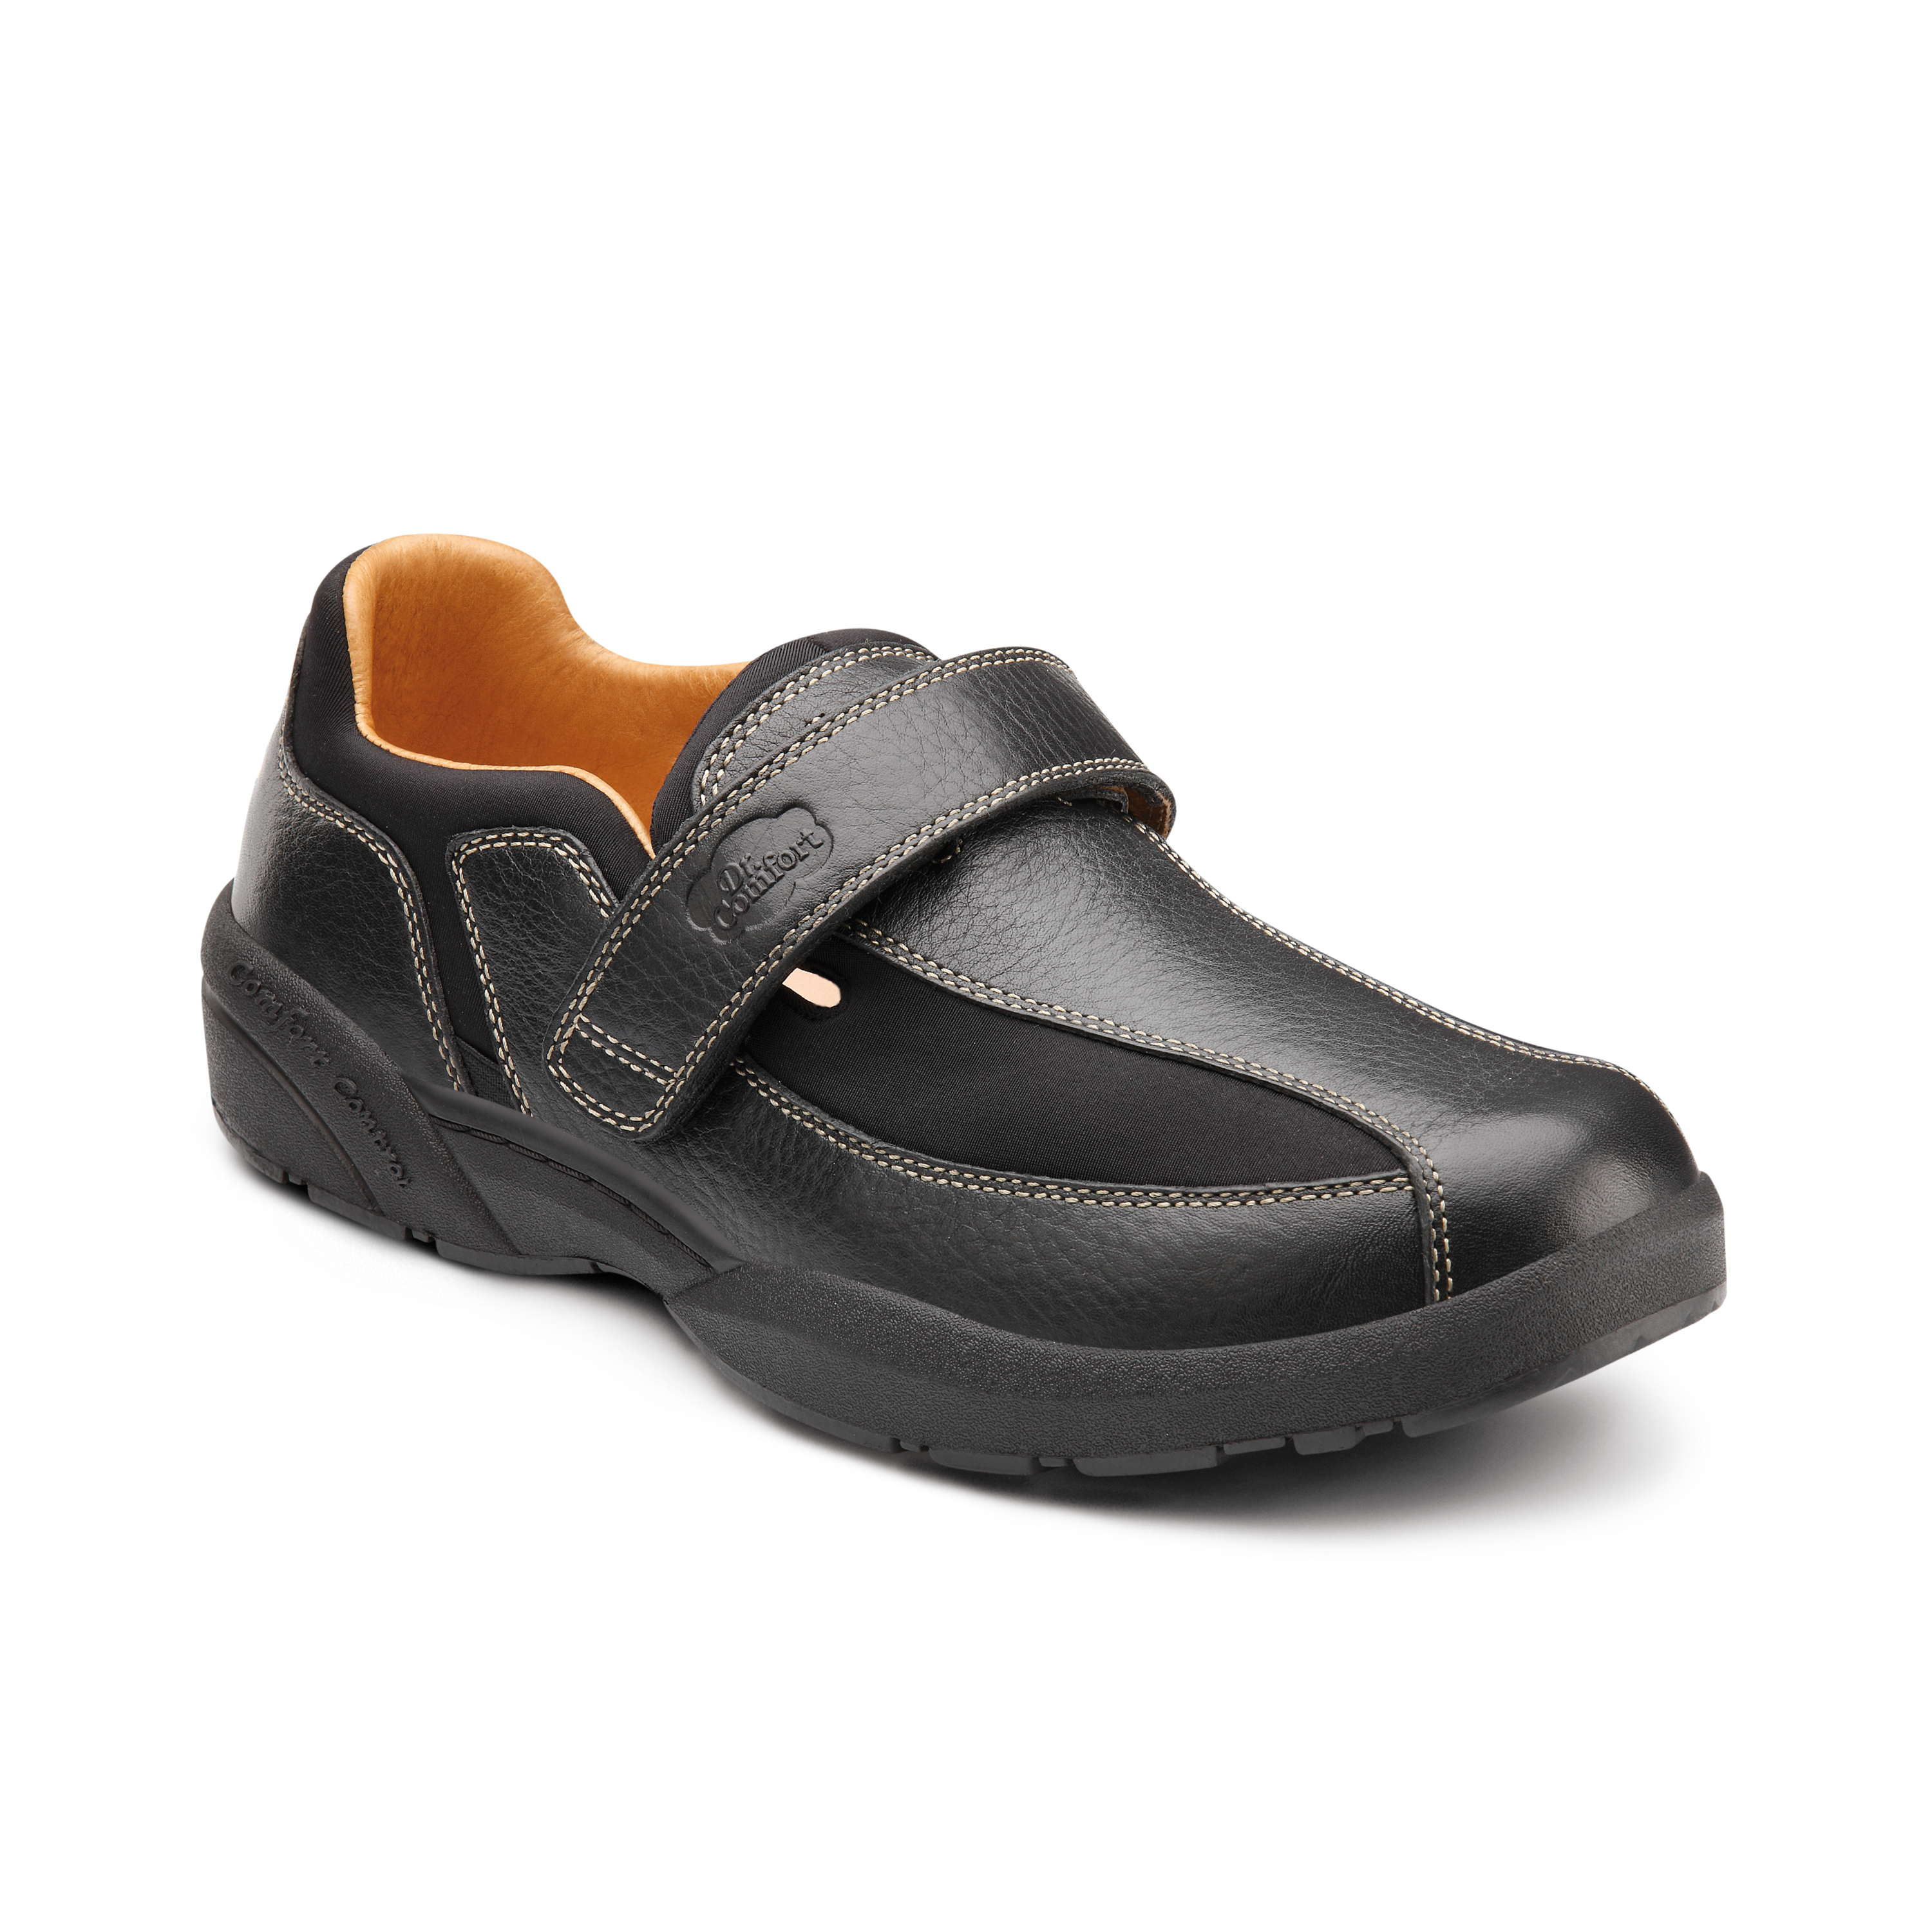 Produktbild DR. COMFORT® Douglas schwarz, Orthopädische Schuhe, Freizeitschuh aus flexiblem Lycra®, mit Lederbesatz und Klettverschluss